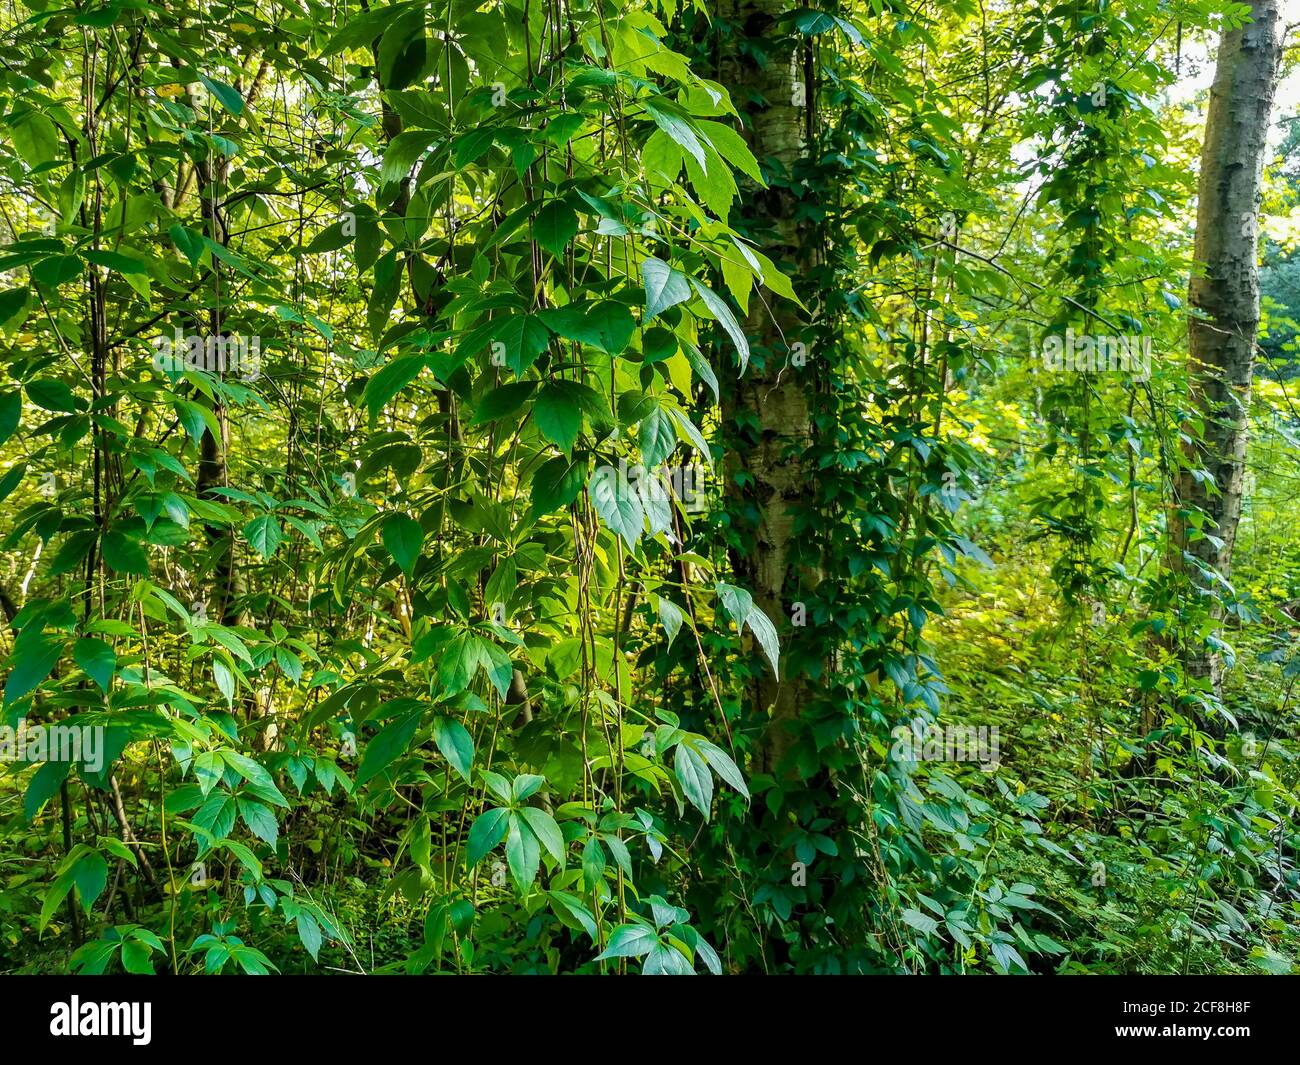 Kletterpflanzen hängen von Birken im Wald von Leherheide, Bremerhaven  Stockfotografie - Alamy